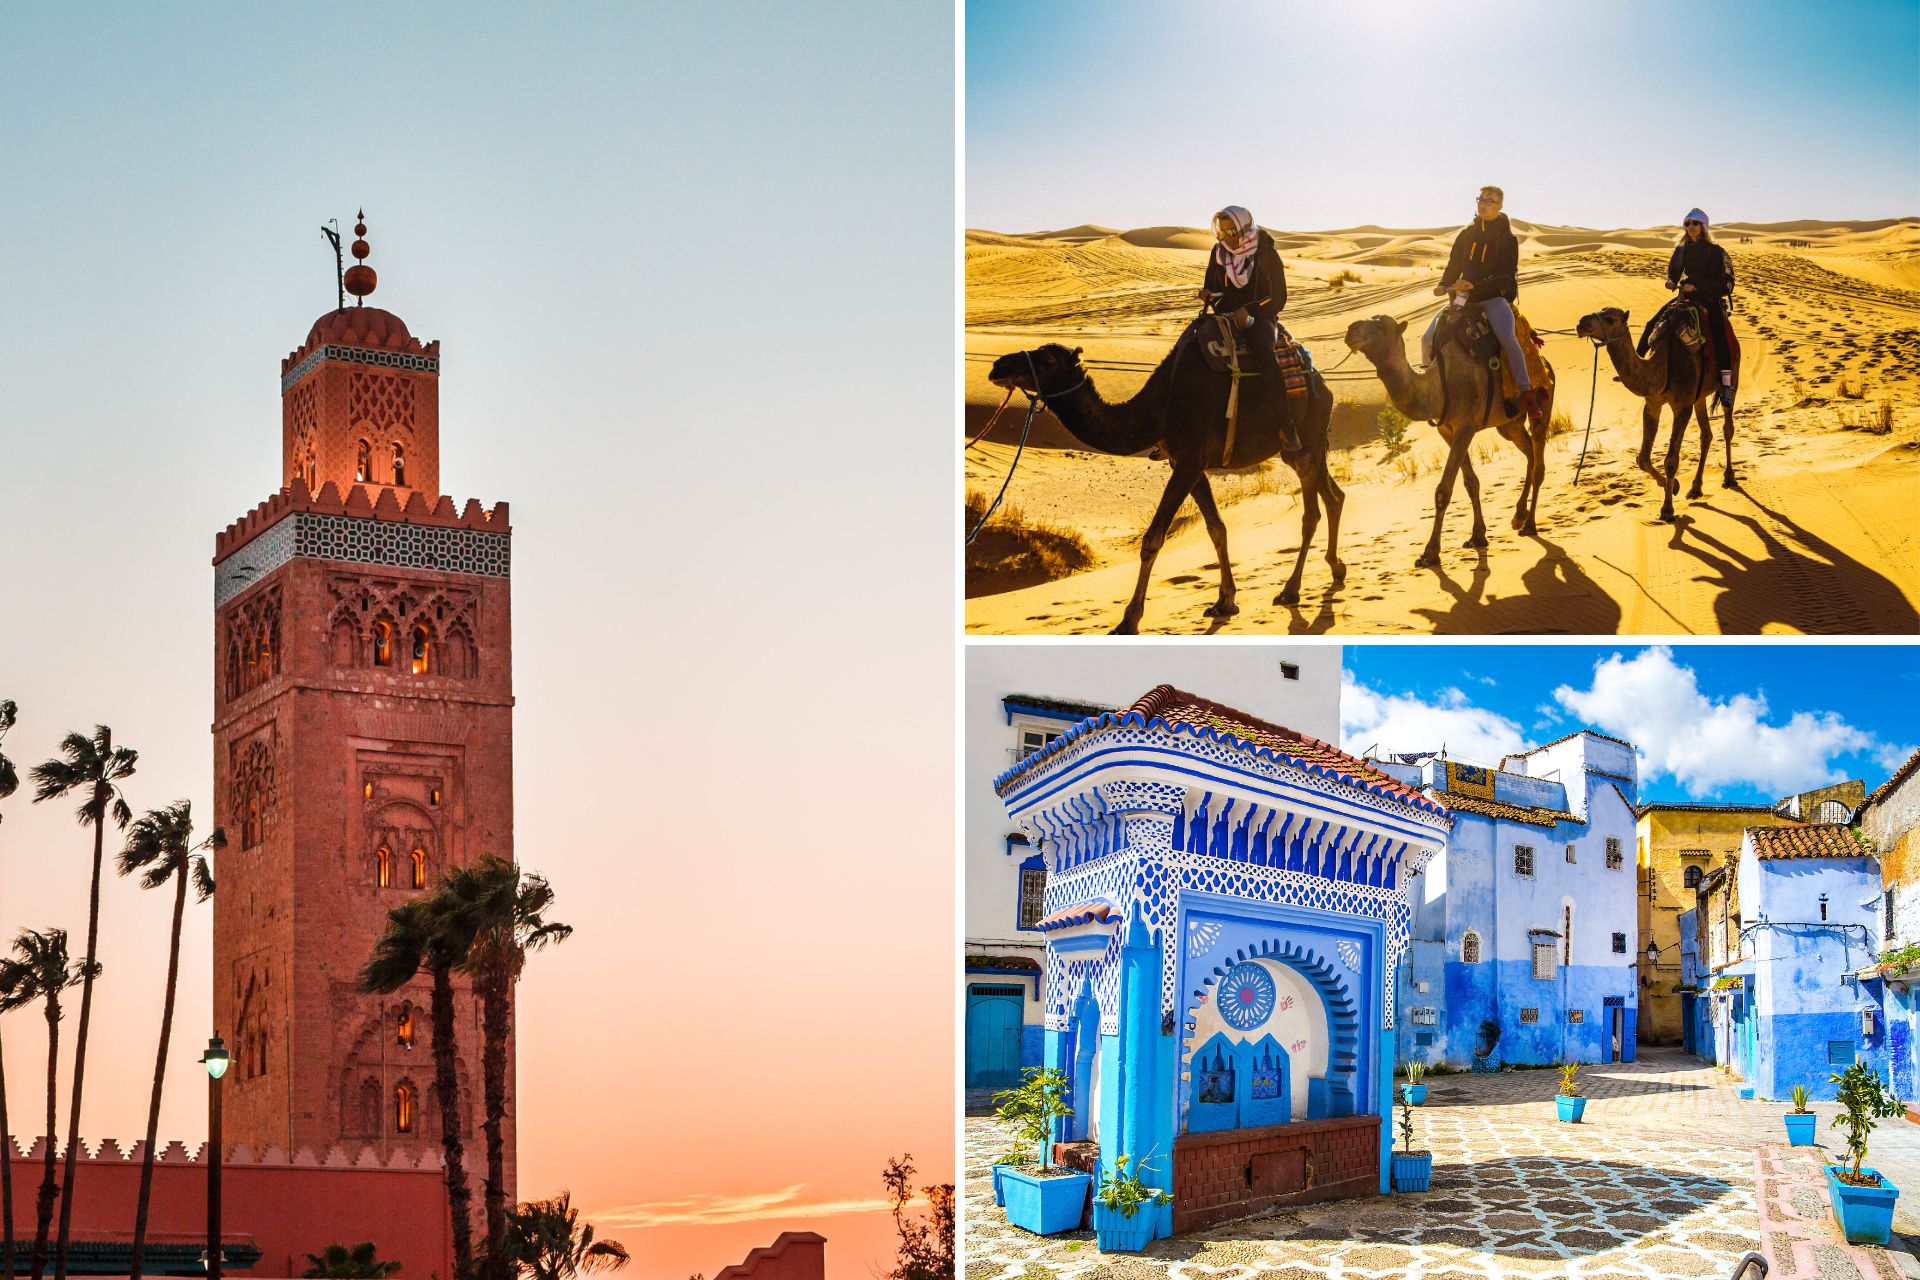 Bienvenido a Tours Desierto Marruecos, tu puerta de entrada a las maravillas del desierto marroquí. Descubre la autenticidad de Marruecos a través de nuestros apasionantes recorridos desde las vibrantes ciudades de Marrakech, Fes, Casablanca, Tangier y Rabat hasta las vastas extensiones del desierto.